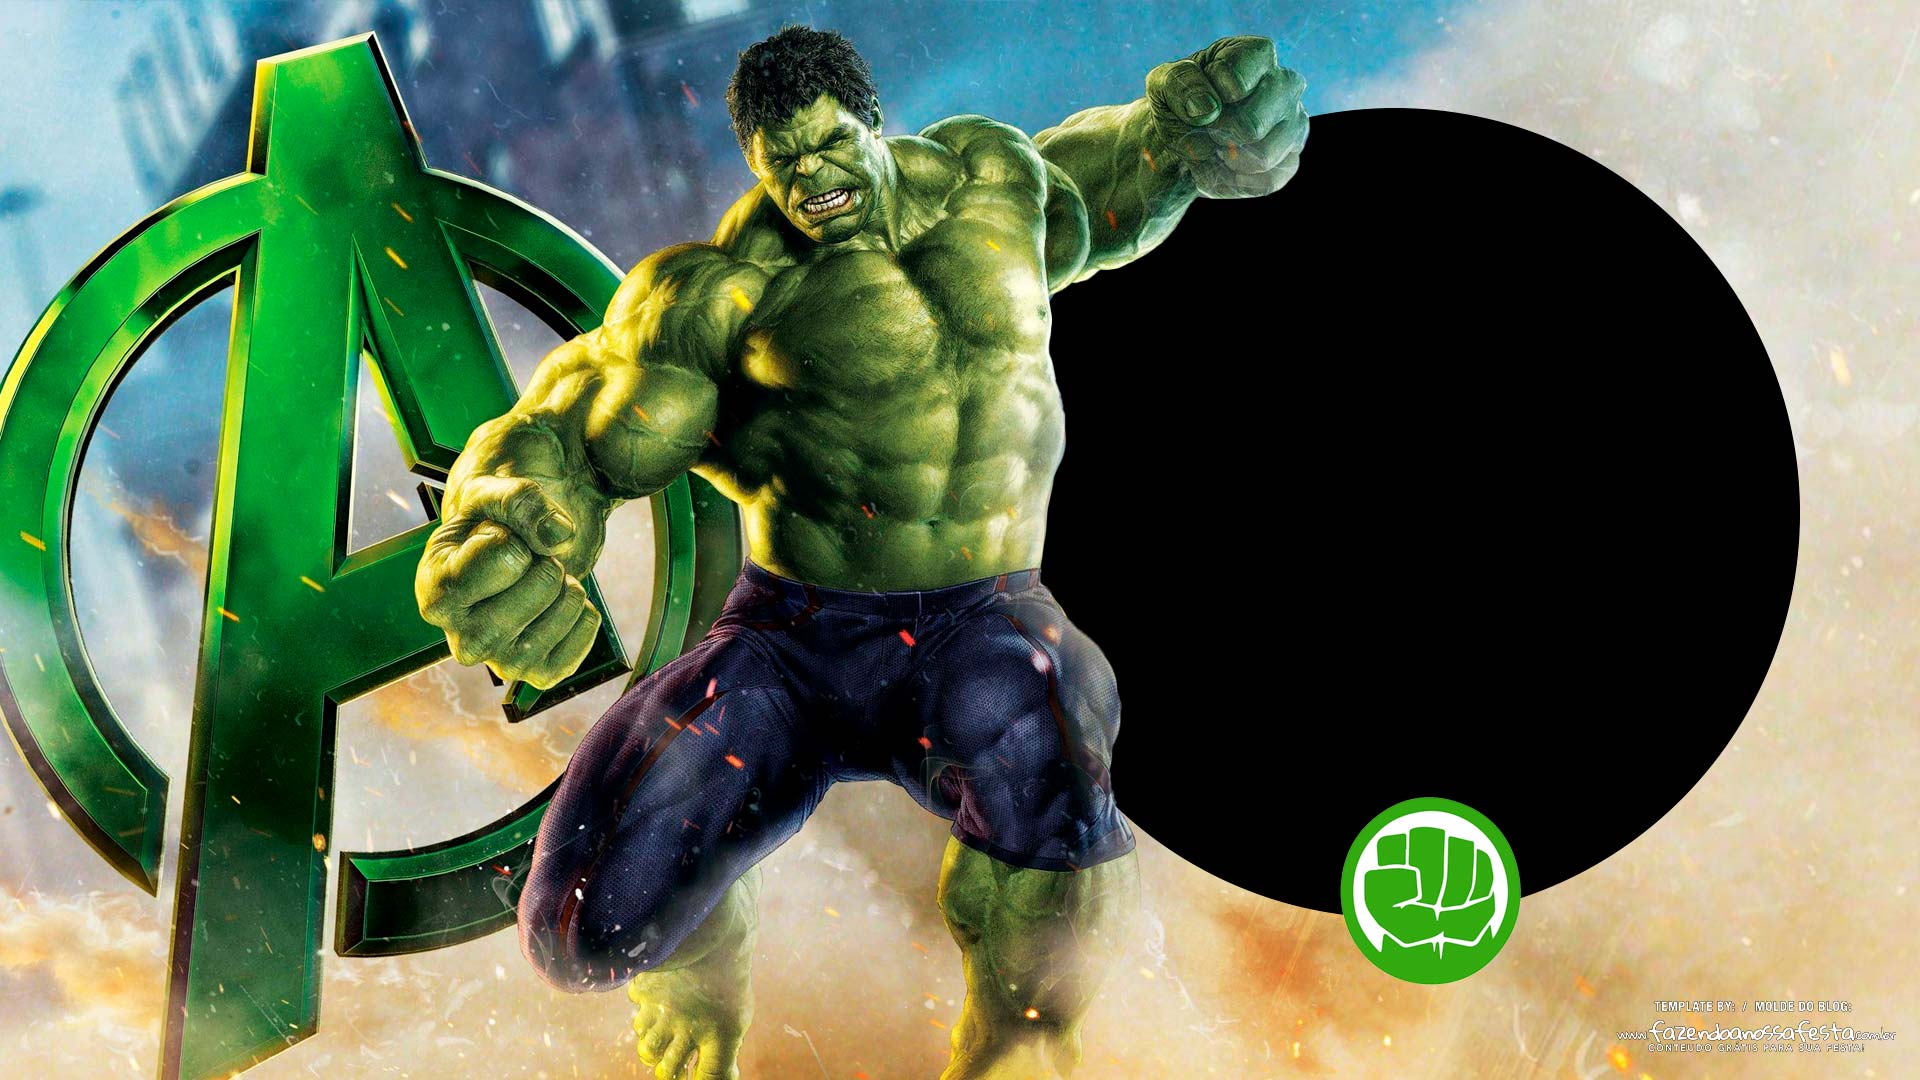 Imagem para TV tema Hulk 2